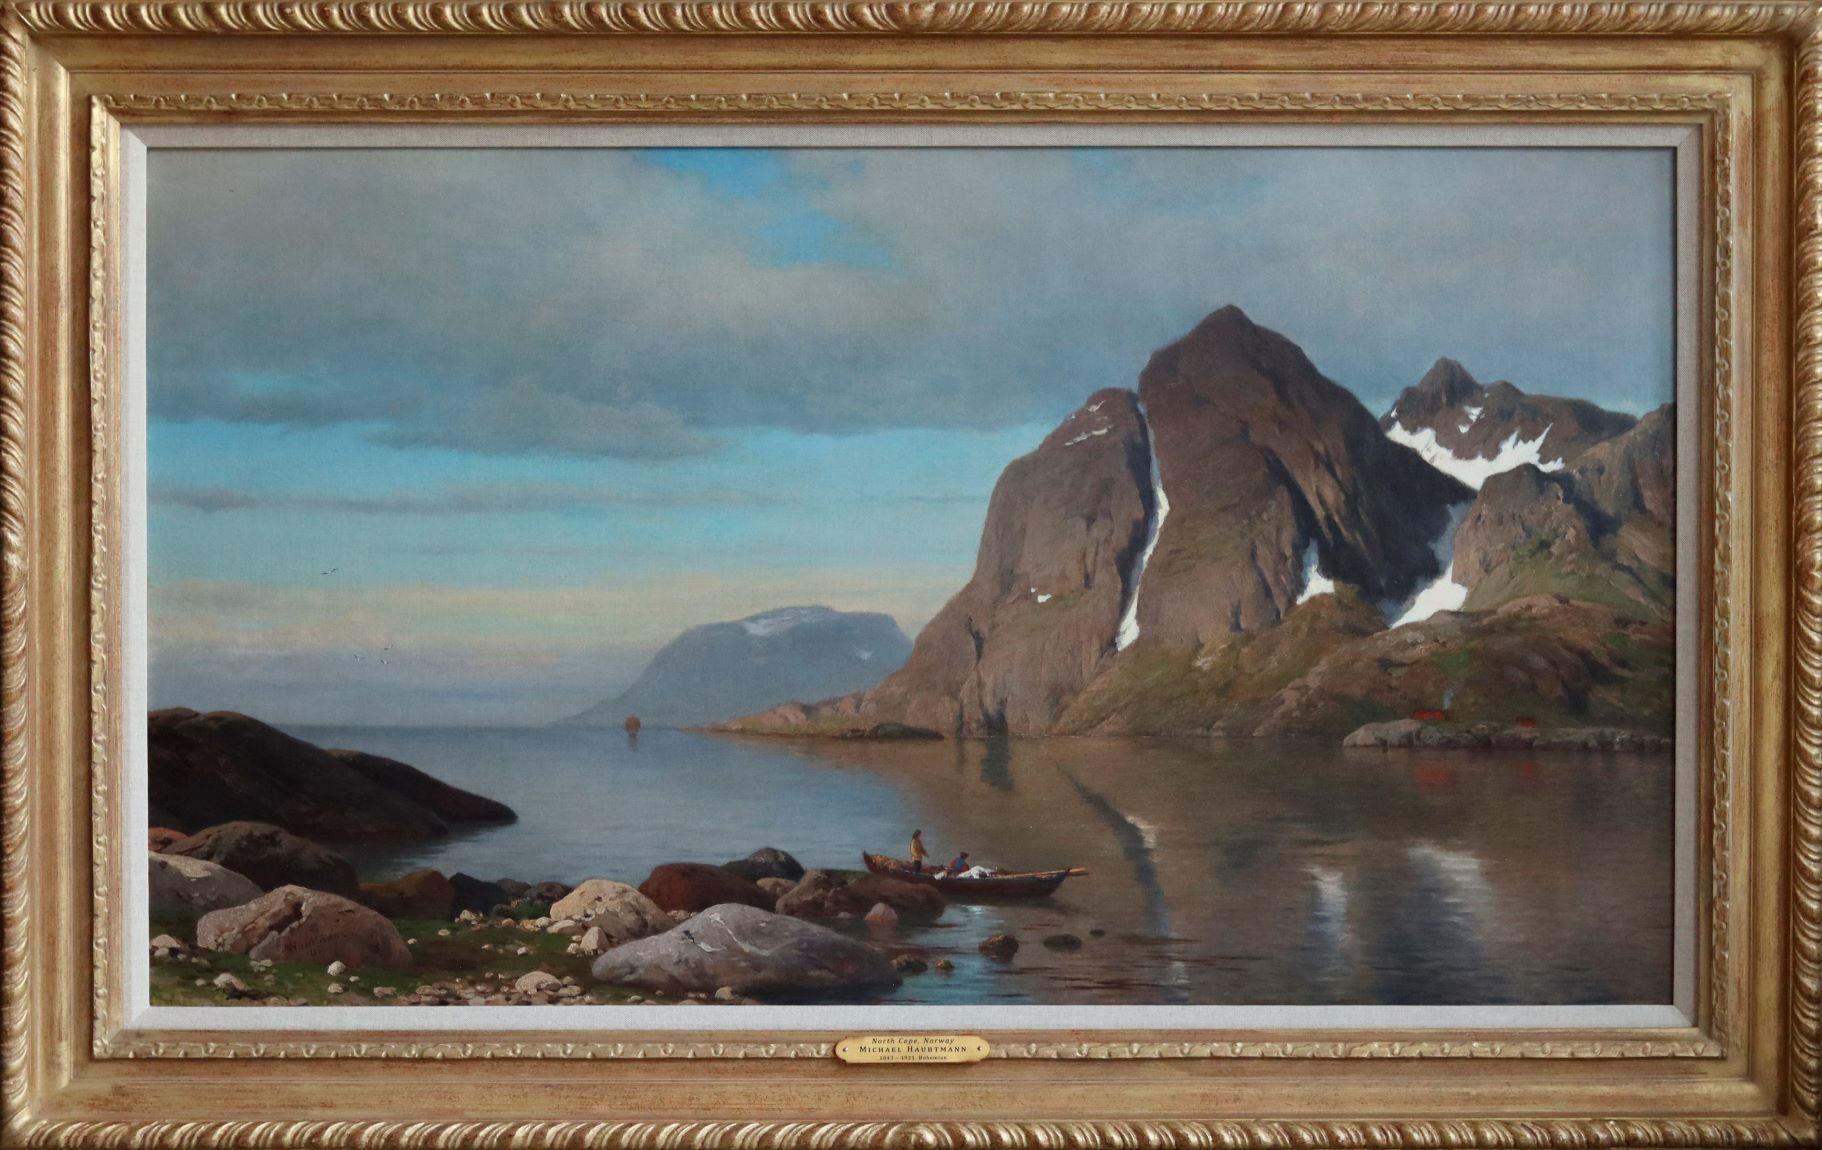 Michael Haubtmann Landscape Painting - The North Cape, Norway                                                          